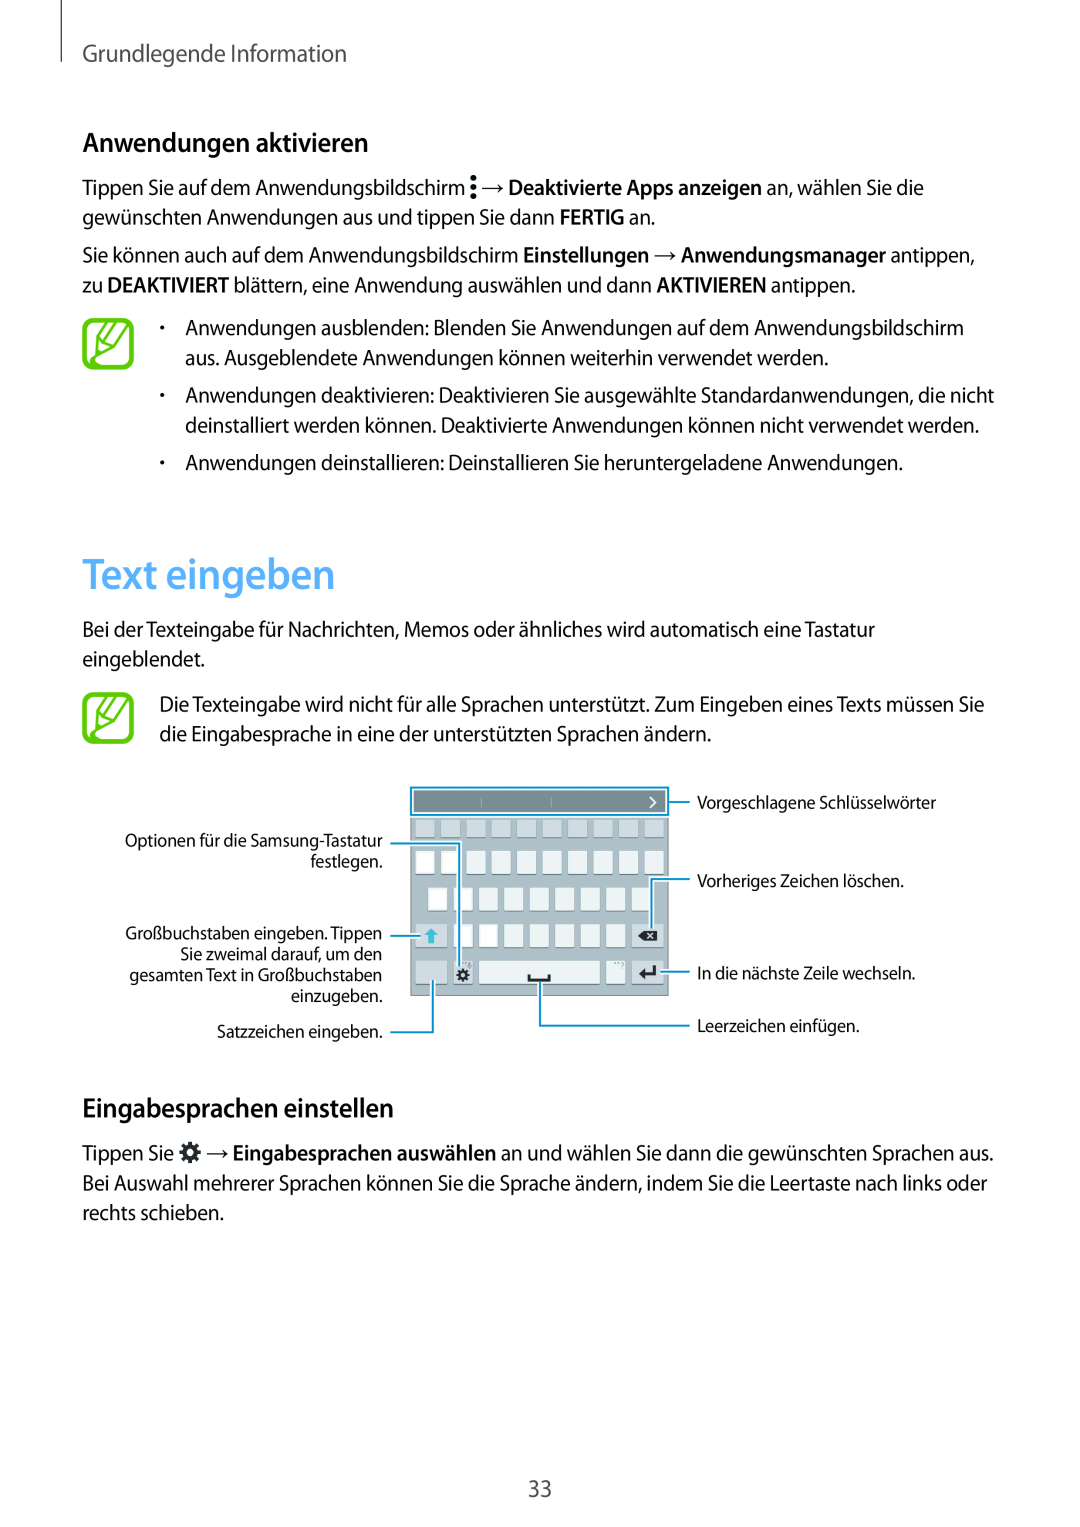 Samsung SM-G901FZKABOG manual Text eingeben, Anwendungen aktivieren, Eingabesprachen einstellen, Grundlegende Information 